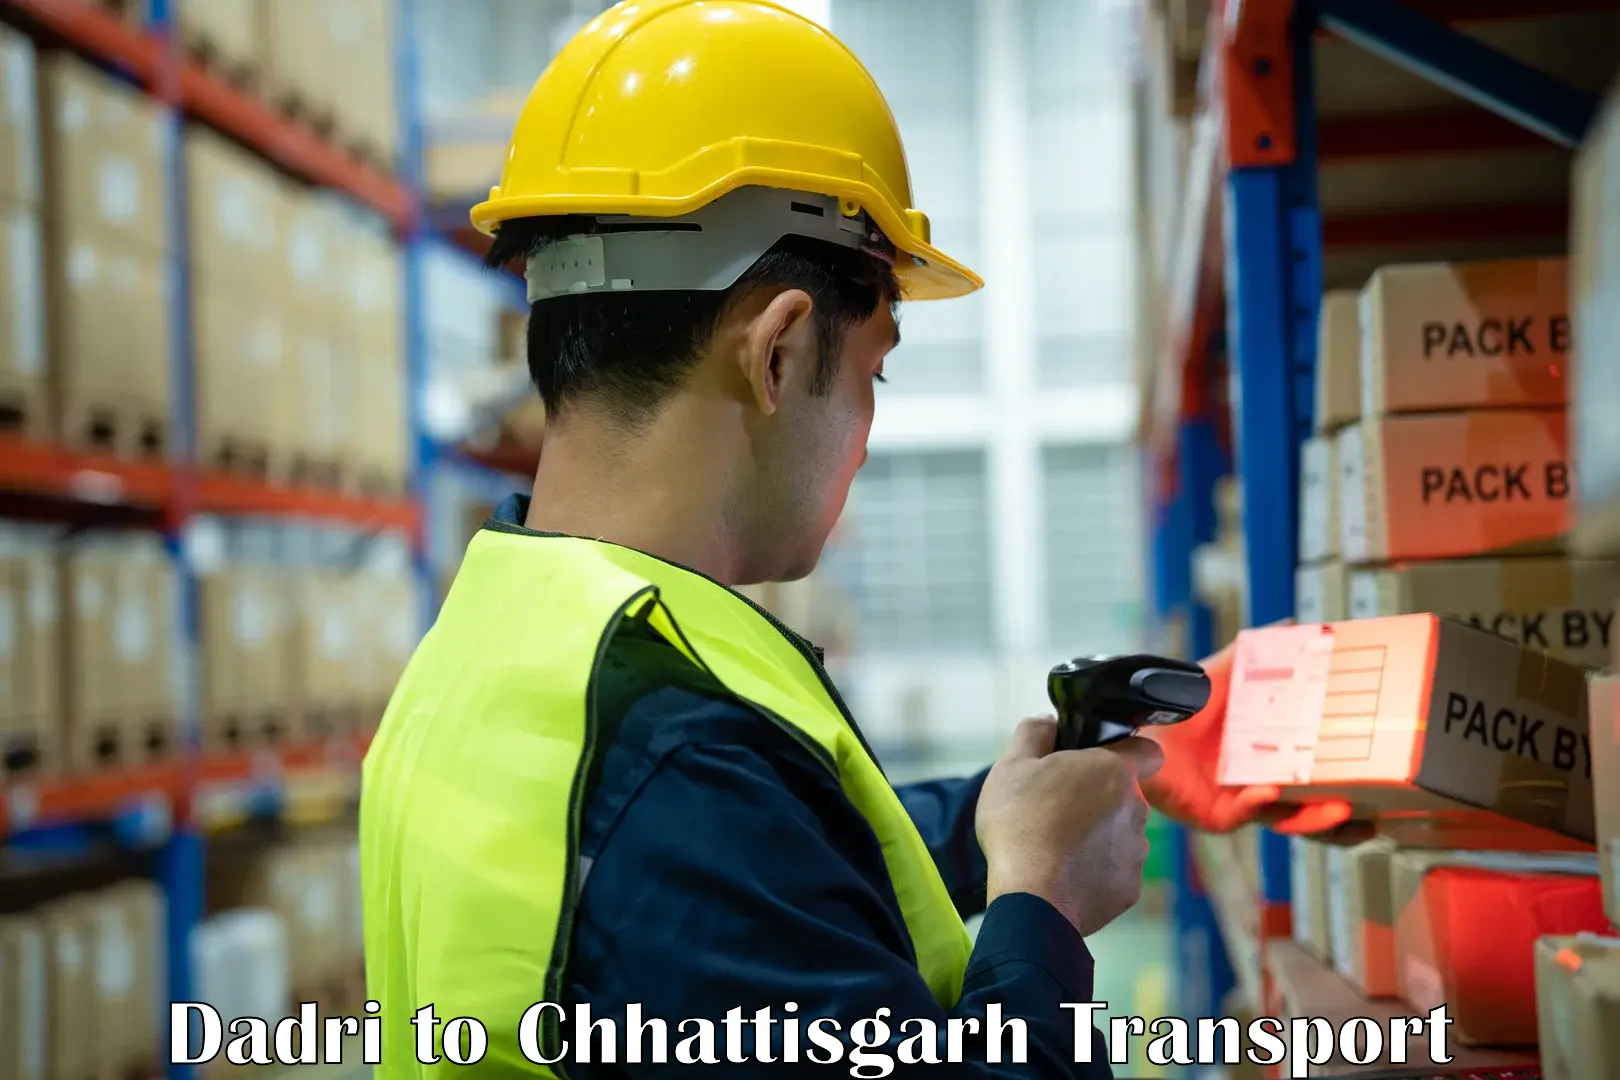 Goods delivery service Dadri to Raigarh Chhattisgarh